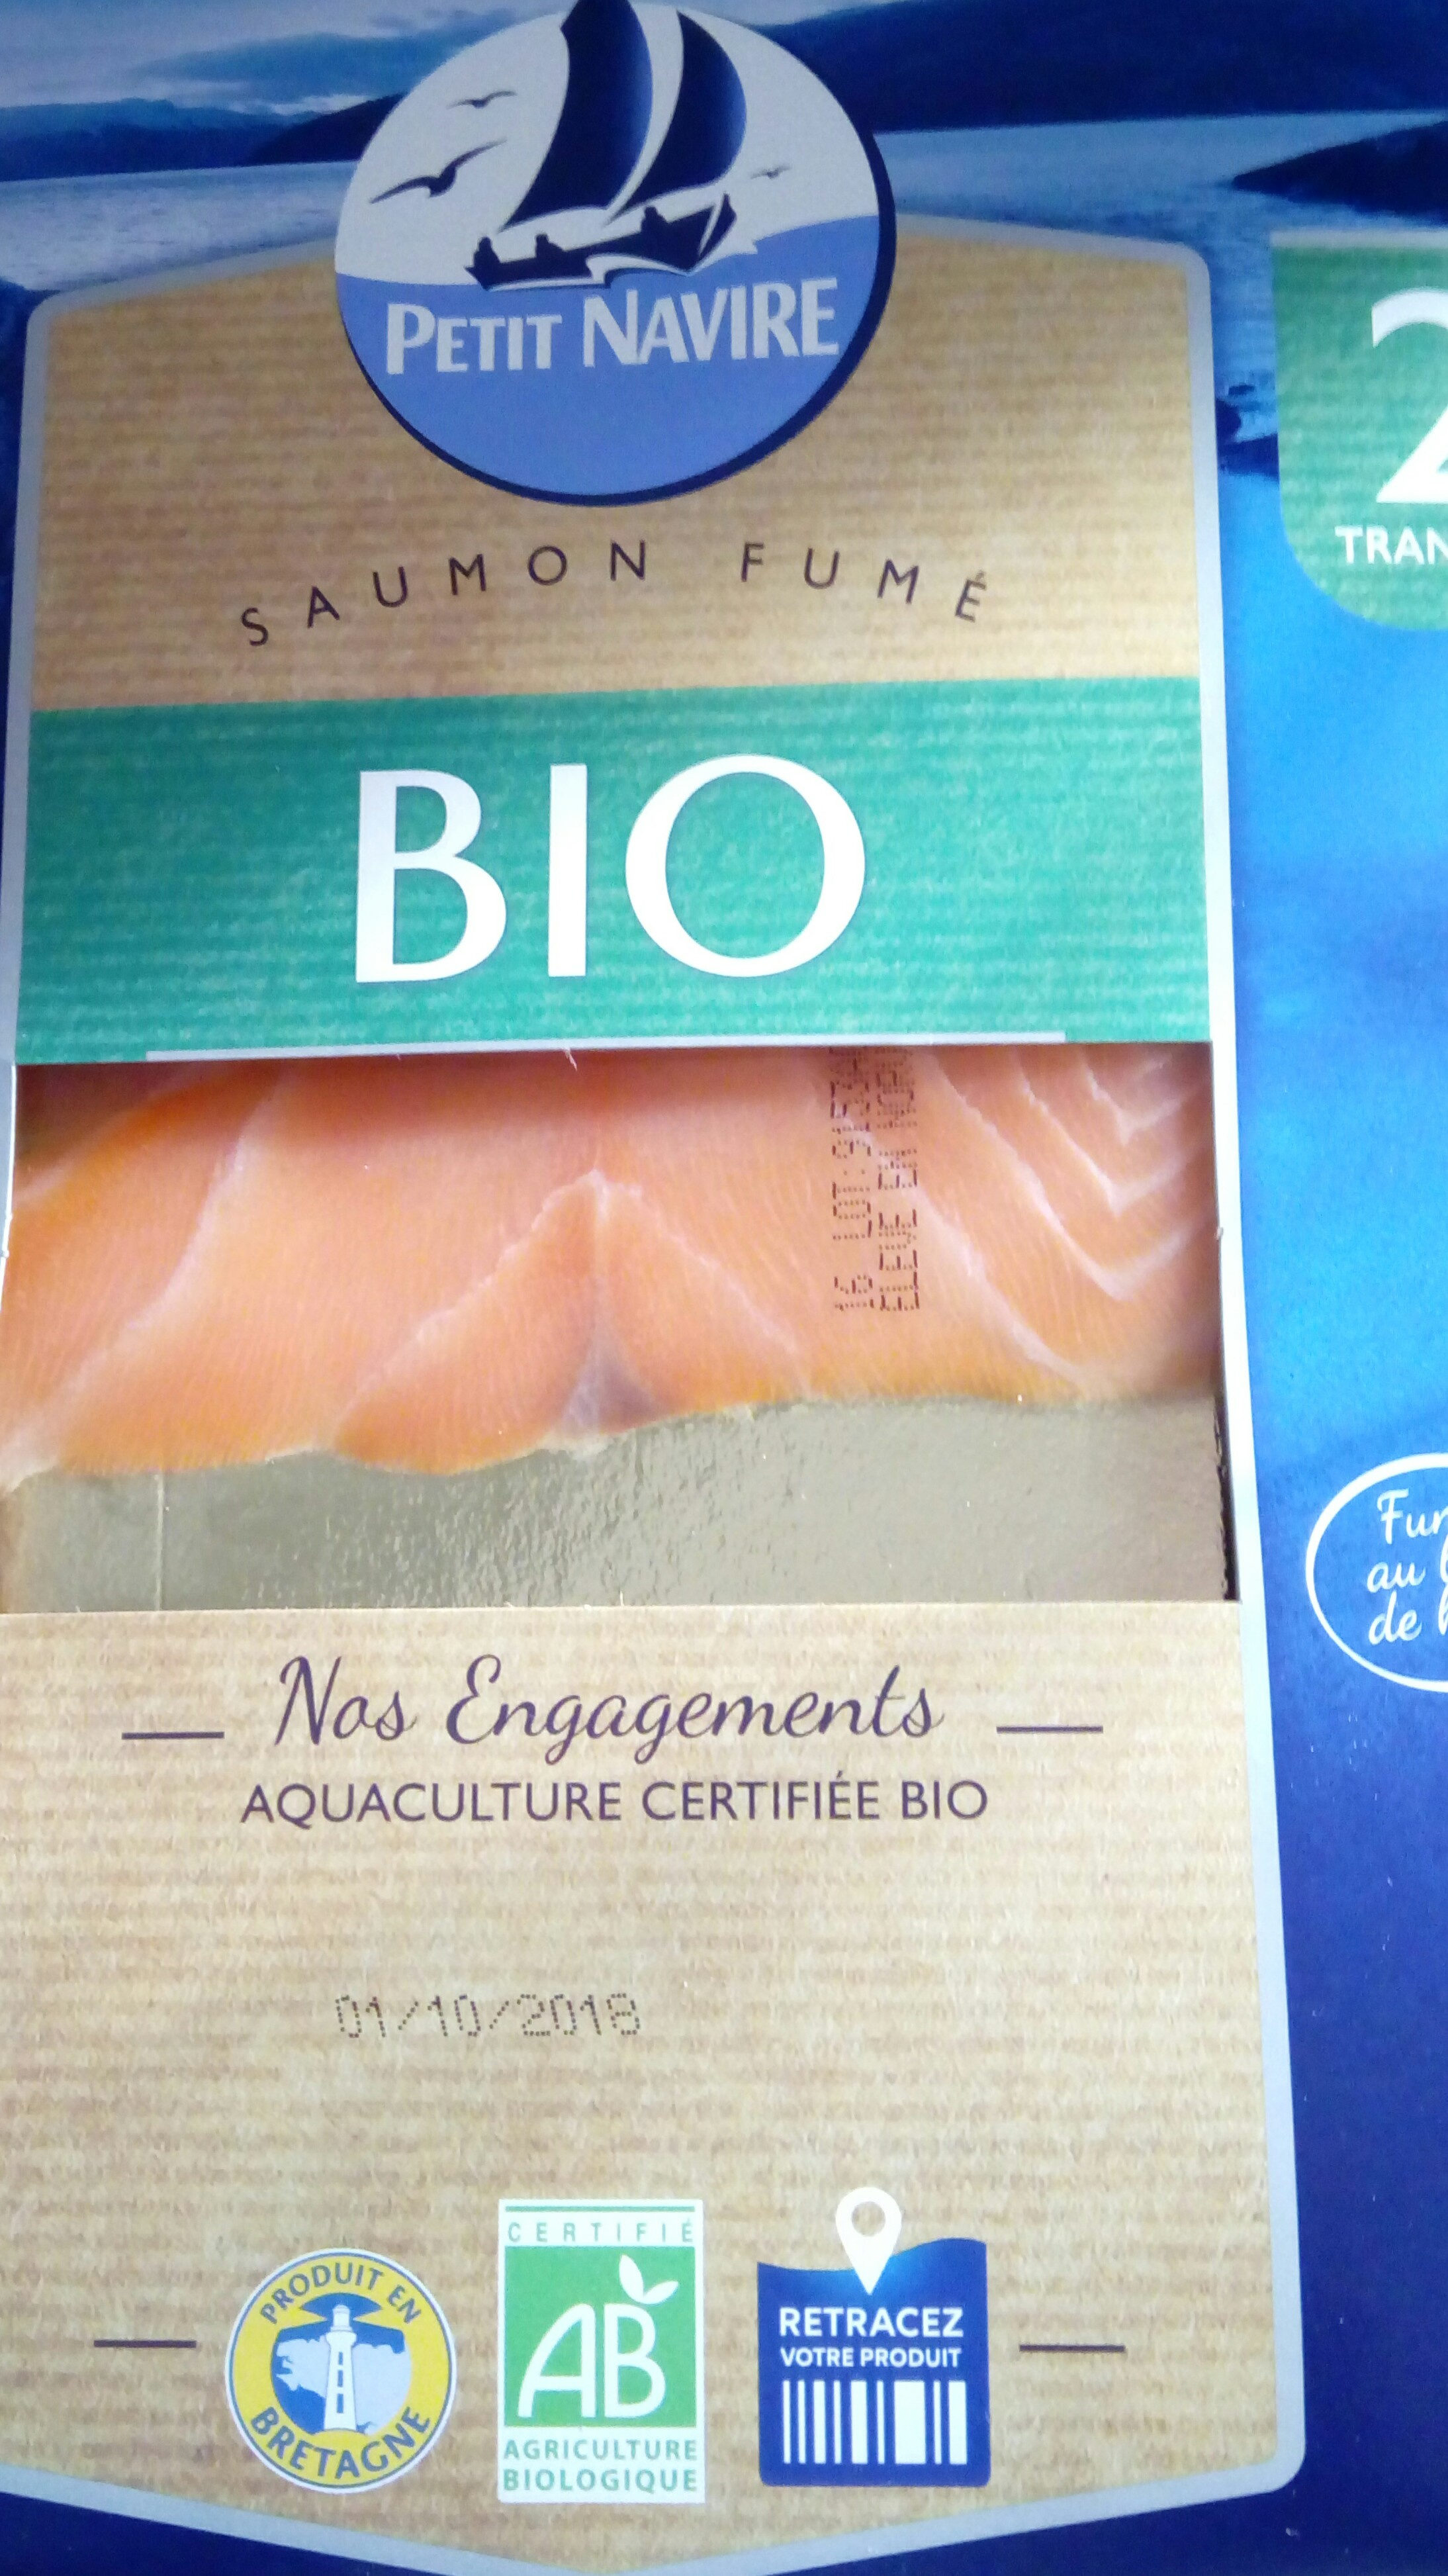 saumon fumé bio - Product - fr